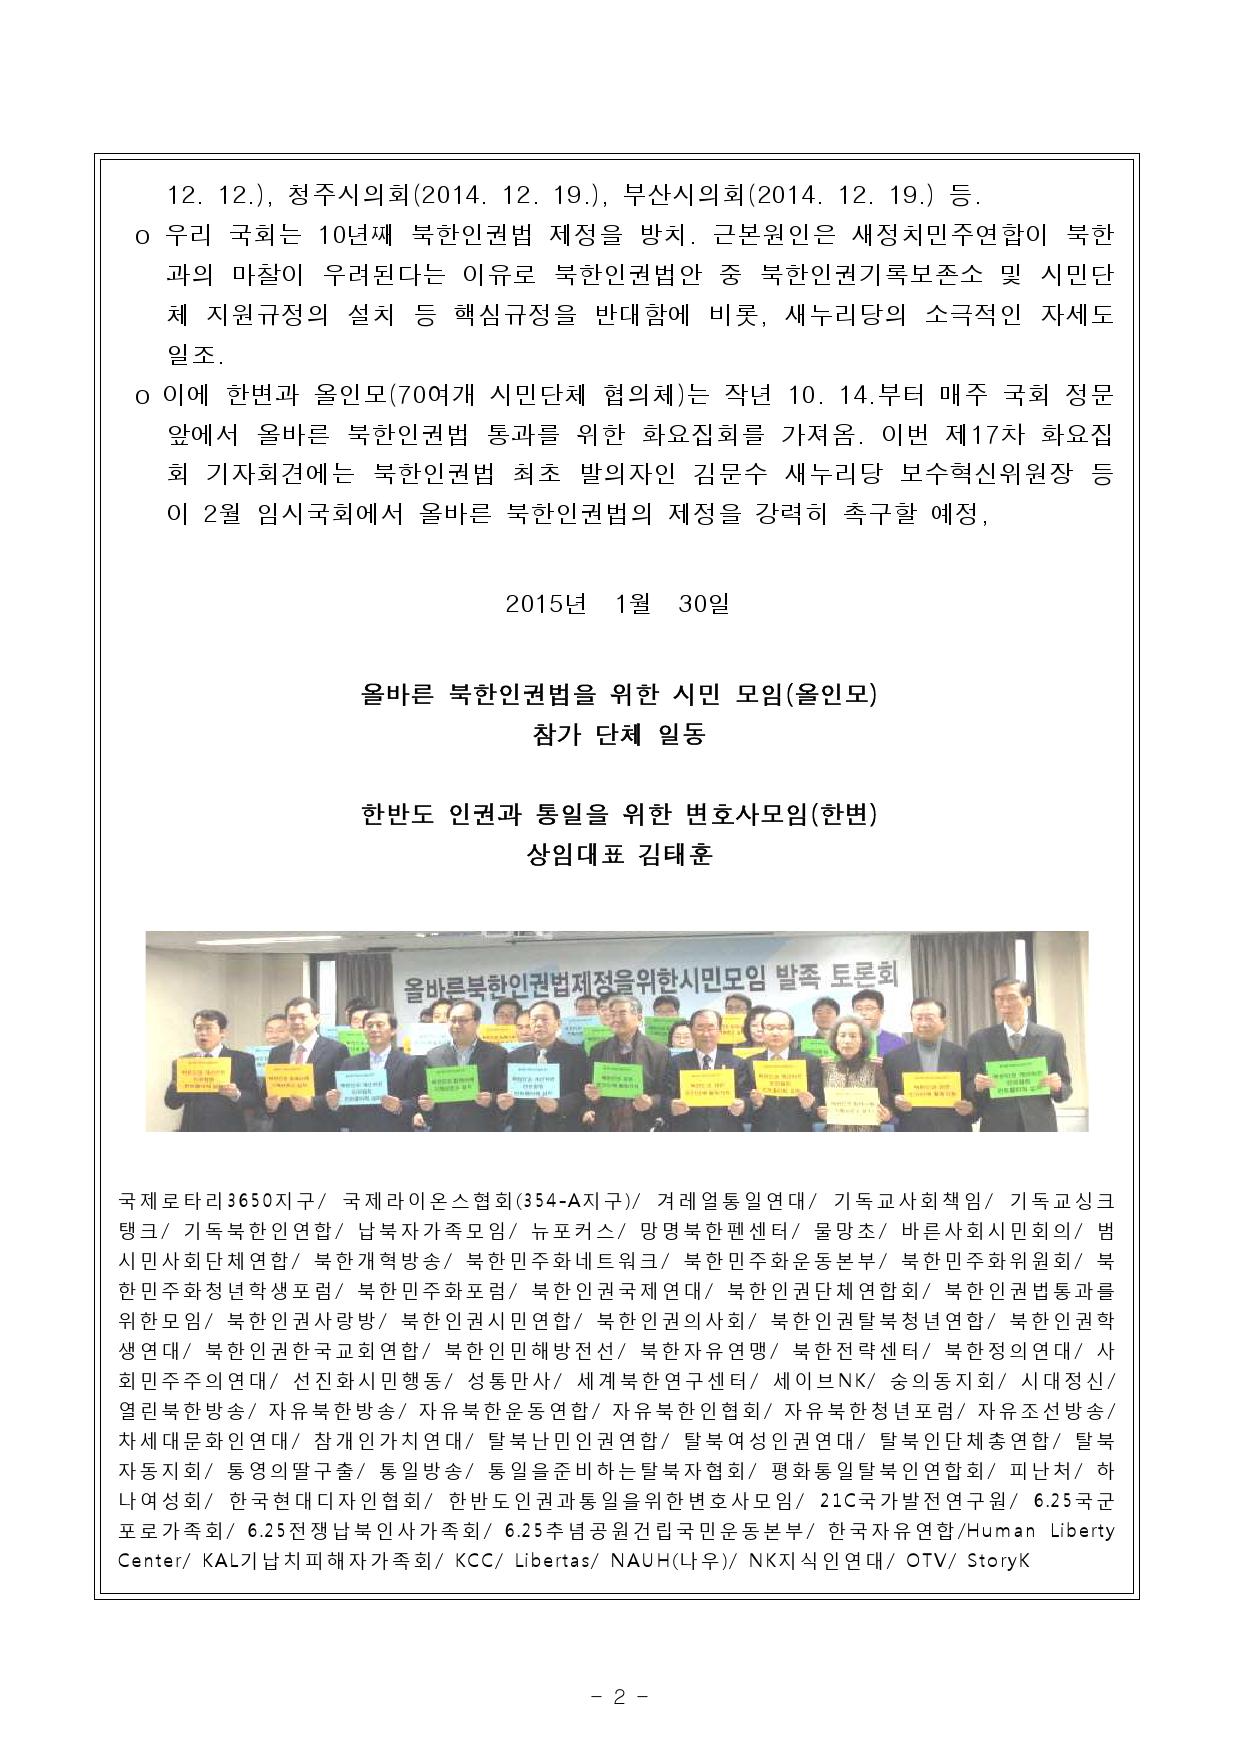 첨부보도자료 한변 올인모와 제17차 화요집회 개최 2015.2.3_000002.jpg